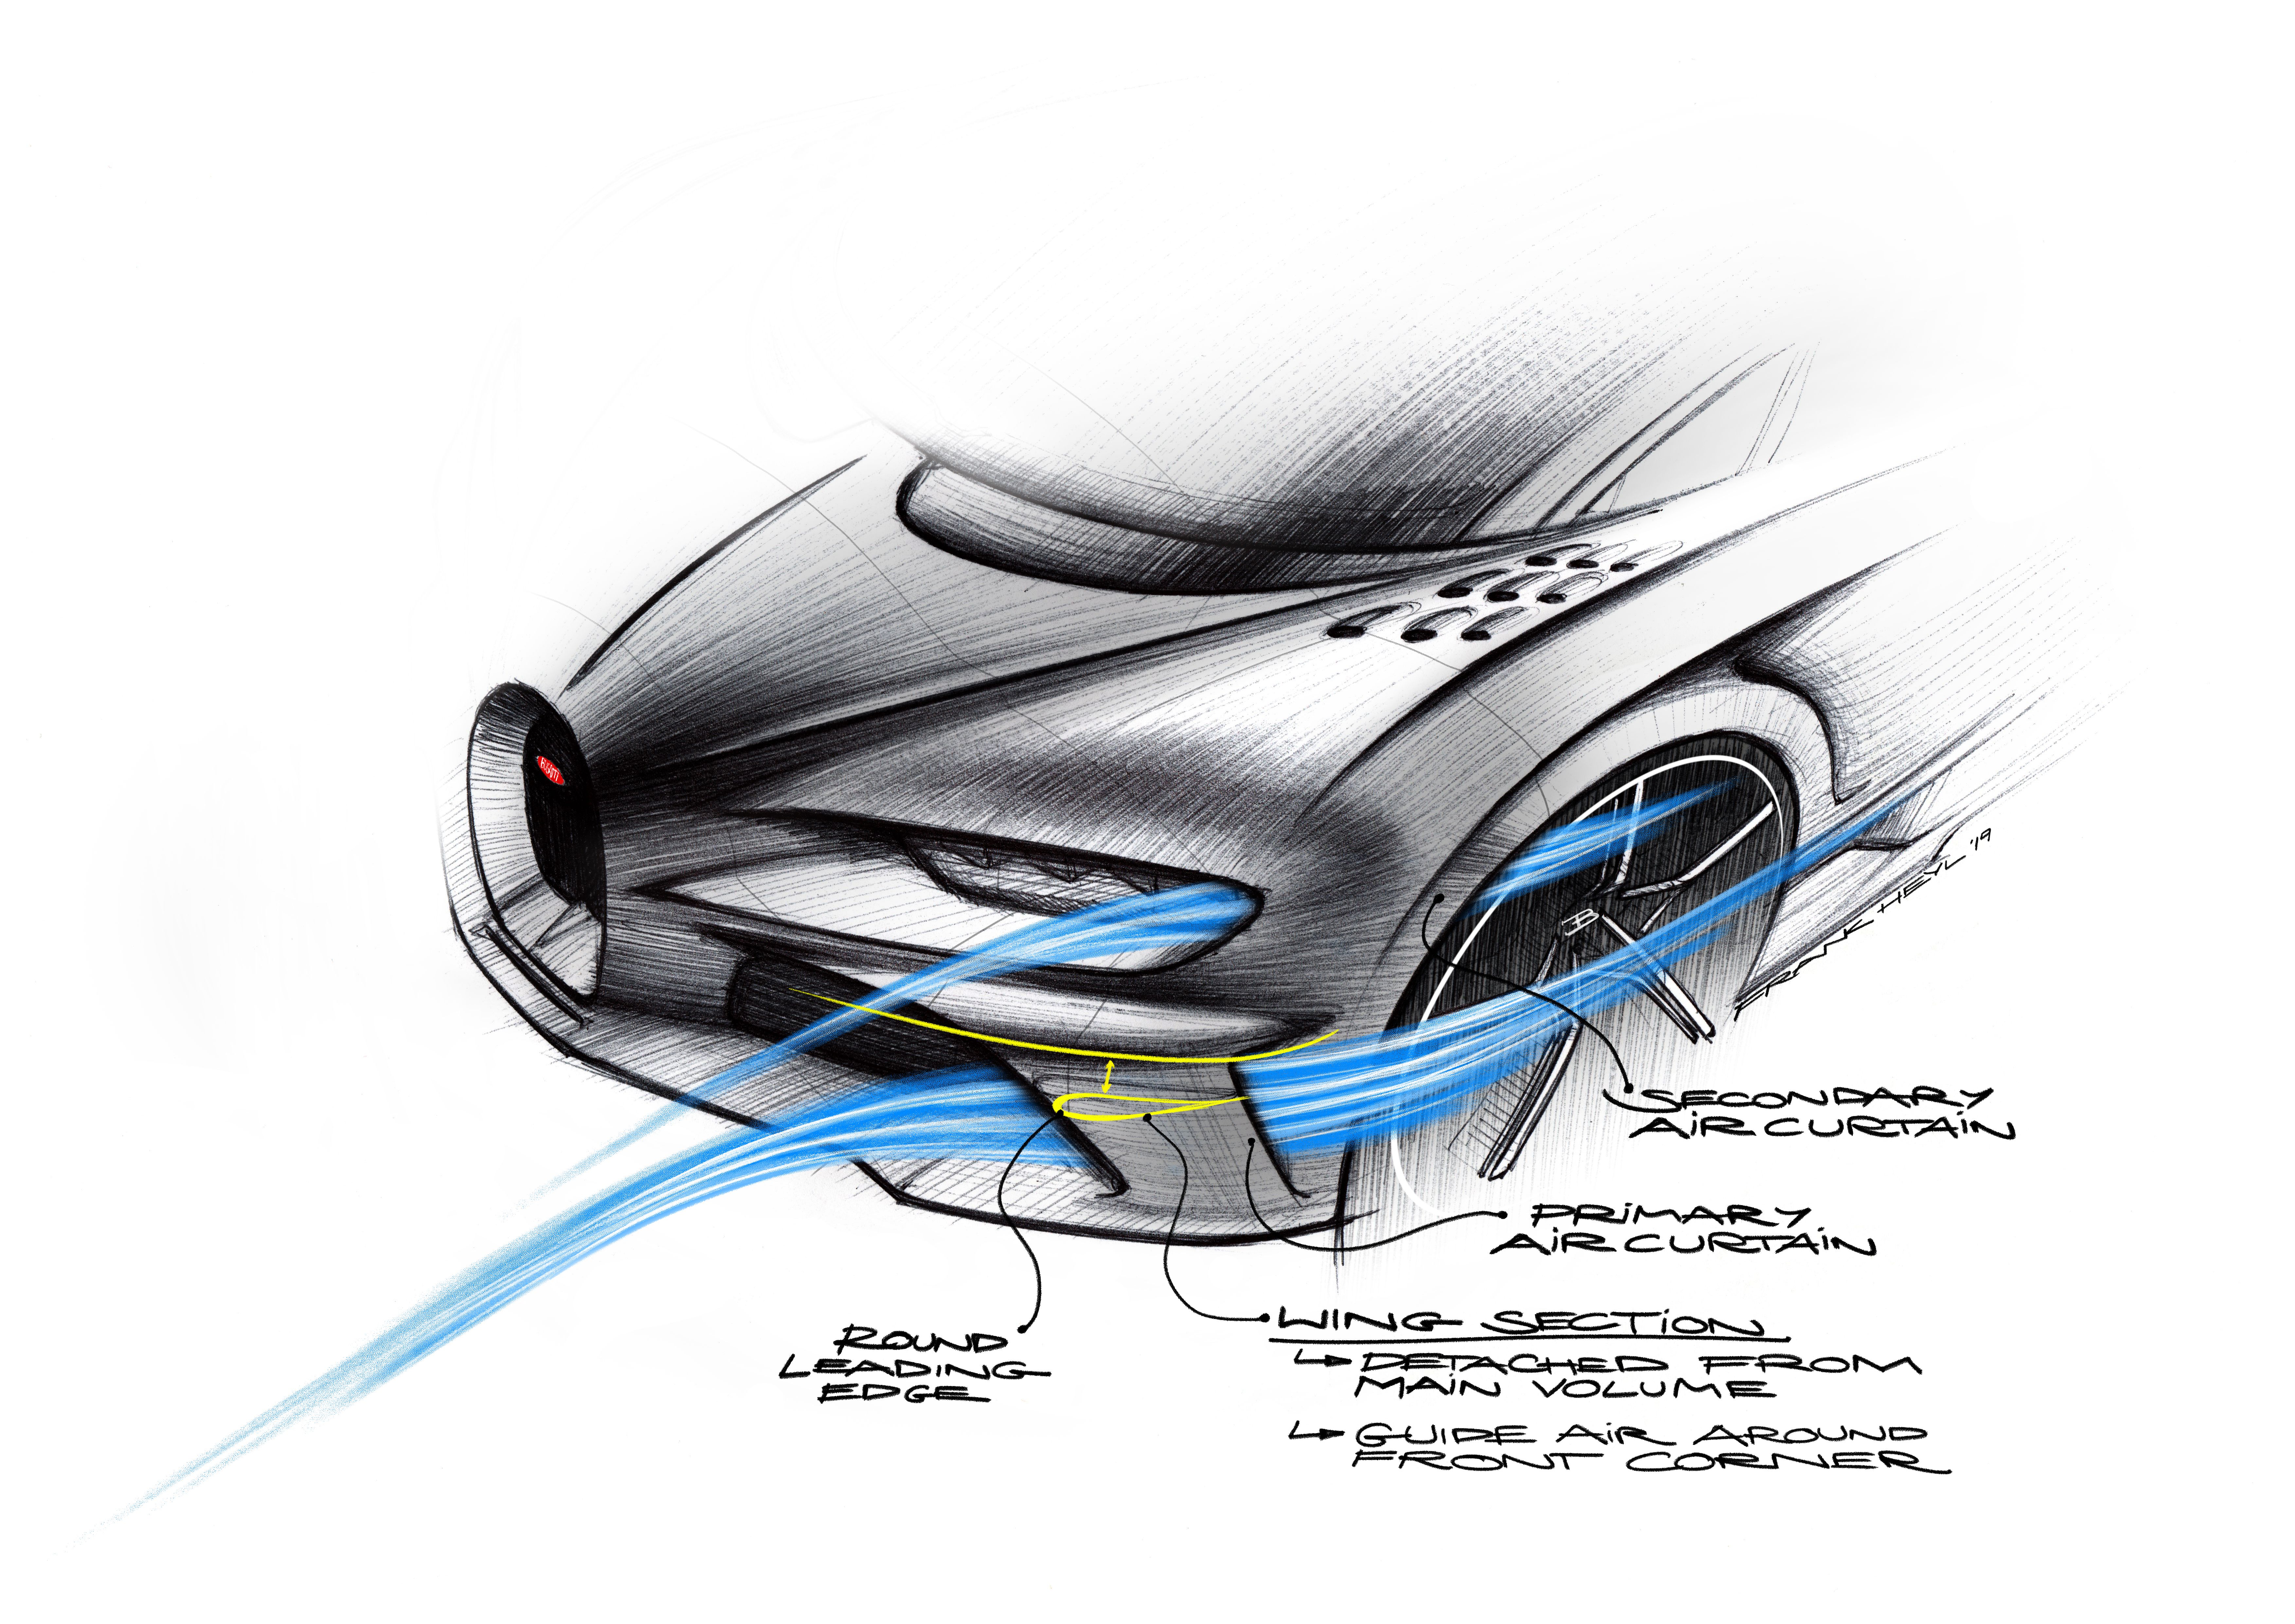 2020 Bugatti Chiron Super Sport 300+